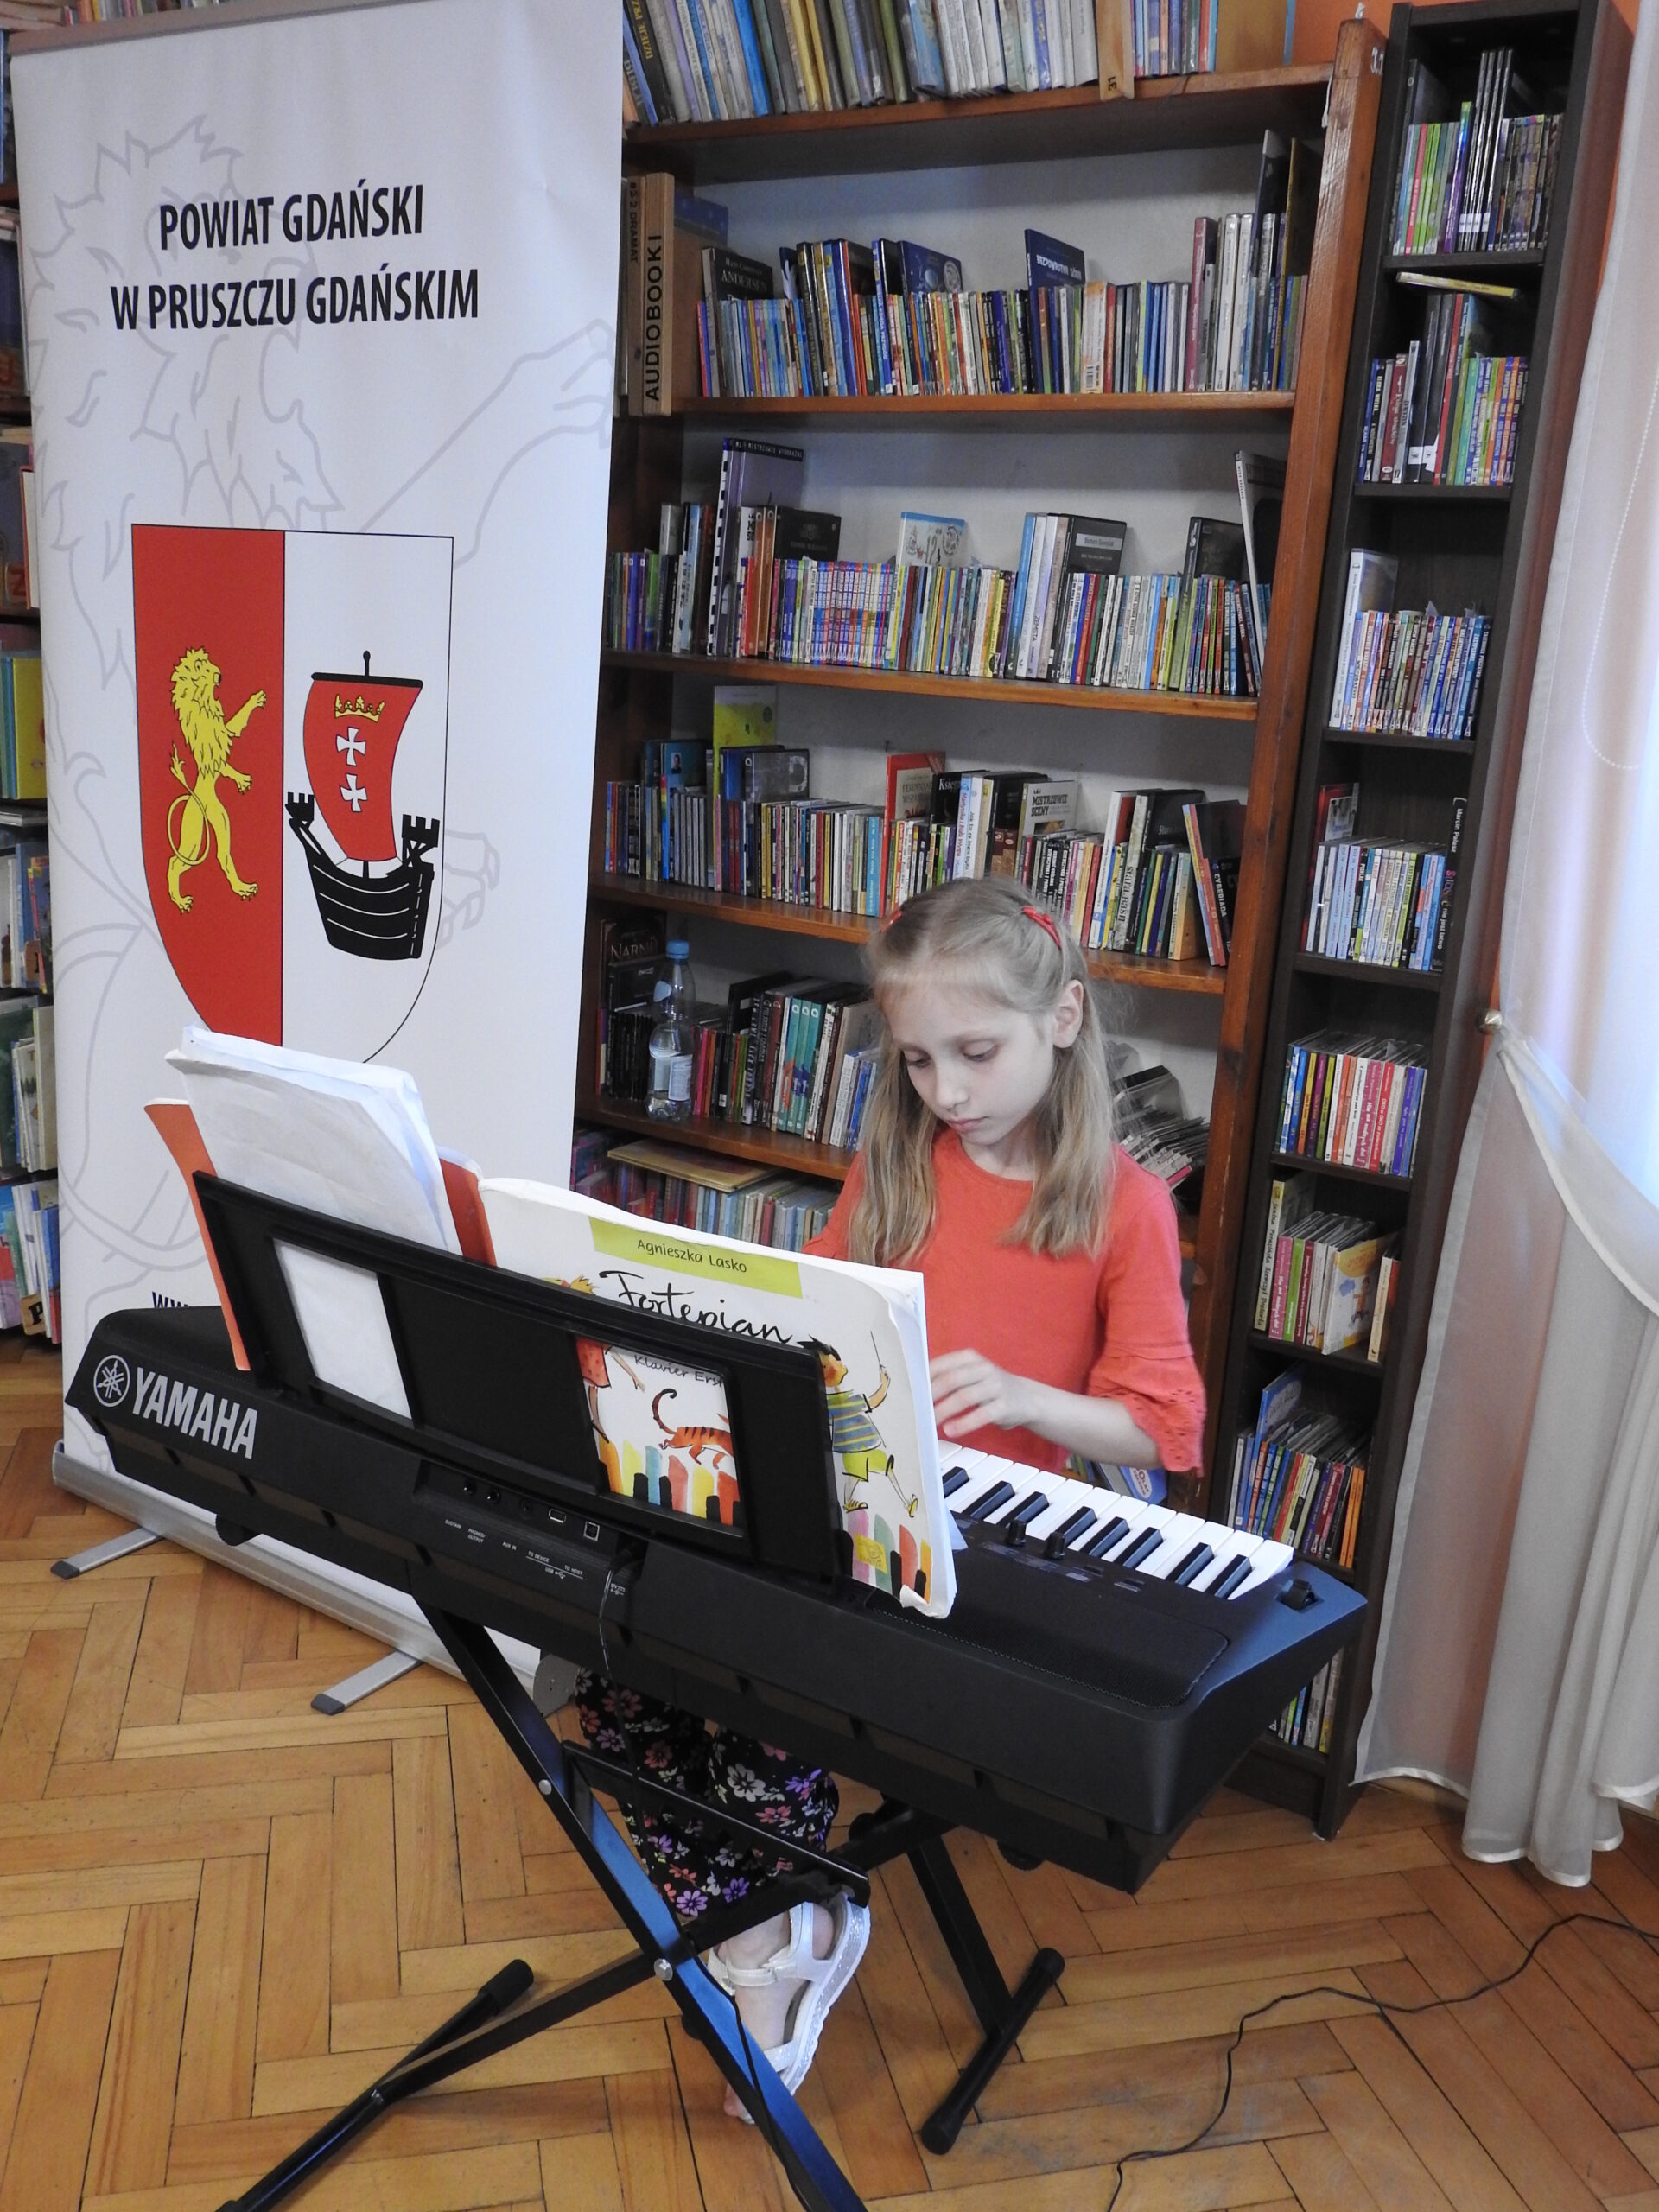 Dziewczynka siedzi przy instrumencie klawiszowym firmy Yamaha i trzyma dłonie nad klawiszami. Na instrumencie znajdują się otwarte nuty. W tle regały z książkami oraz baner z napisem Powiat Gdański w Pruszczu Gdańskim oraz herbem Powiatu Gdańskiego.